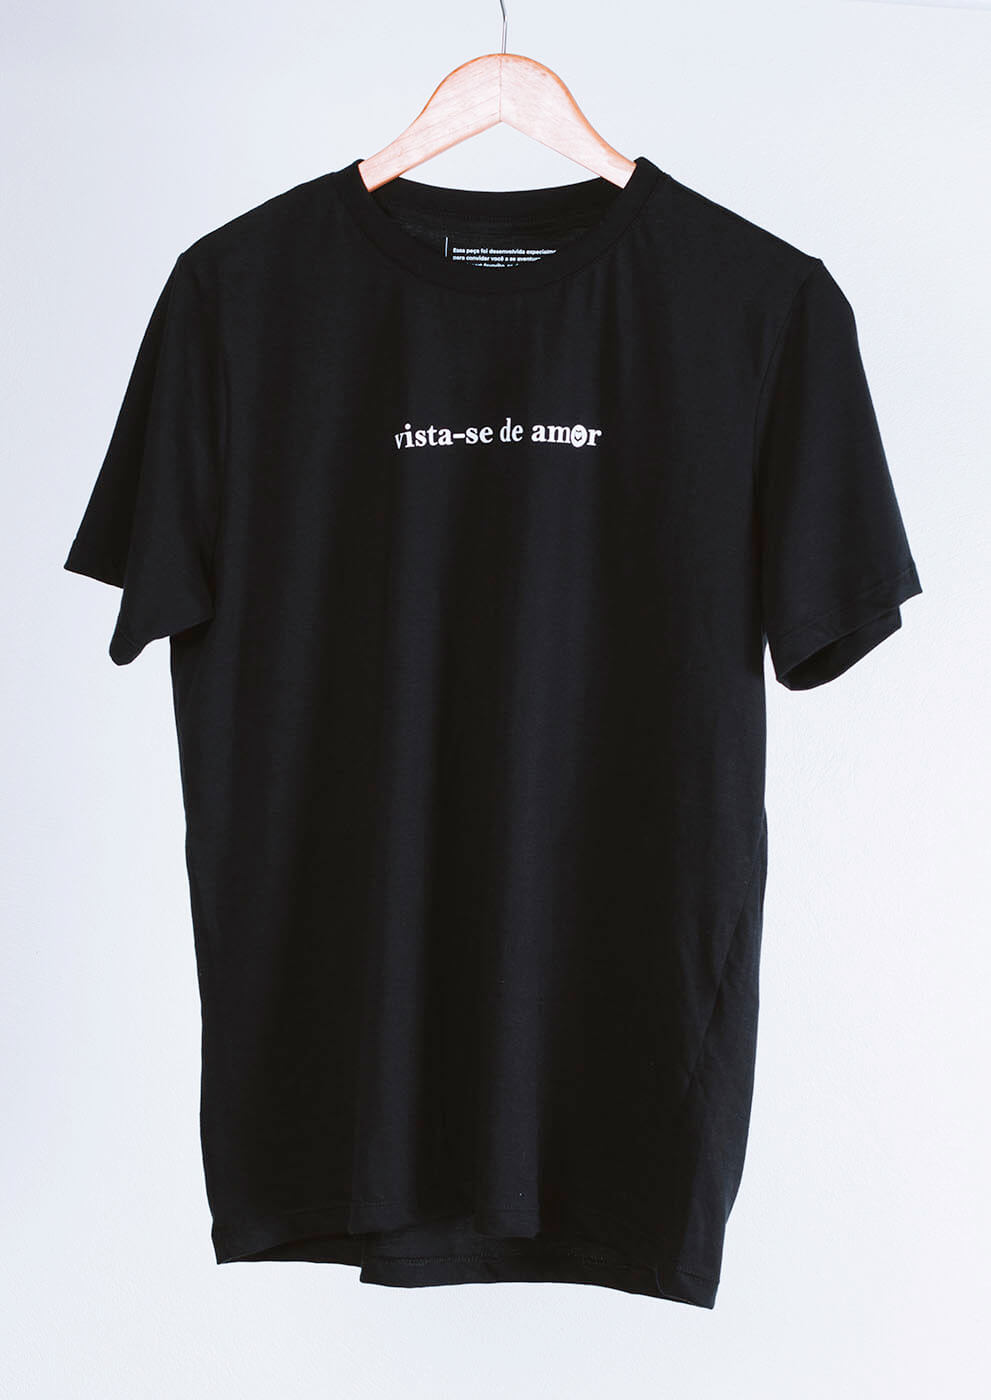 T-shirt preta vista-se de amor